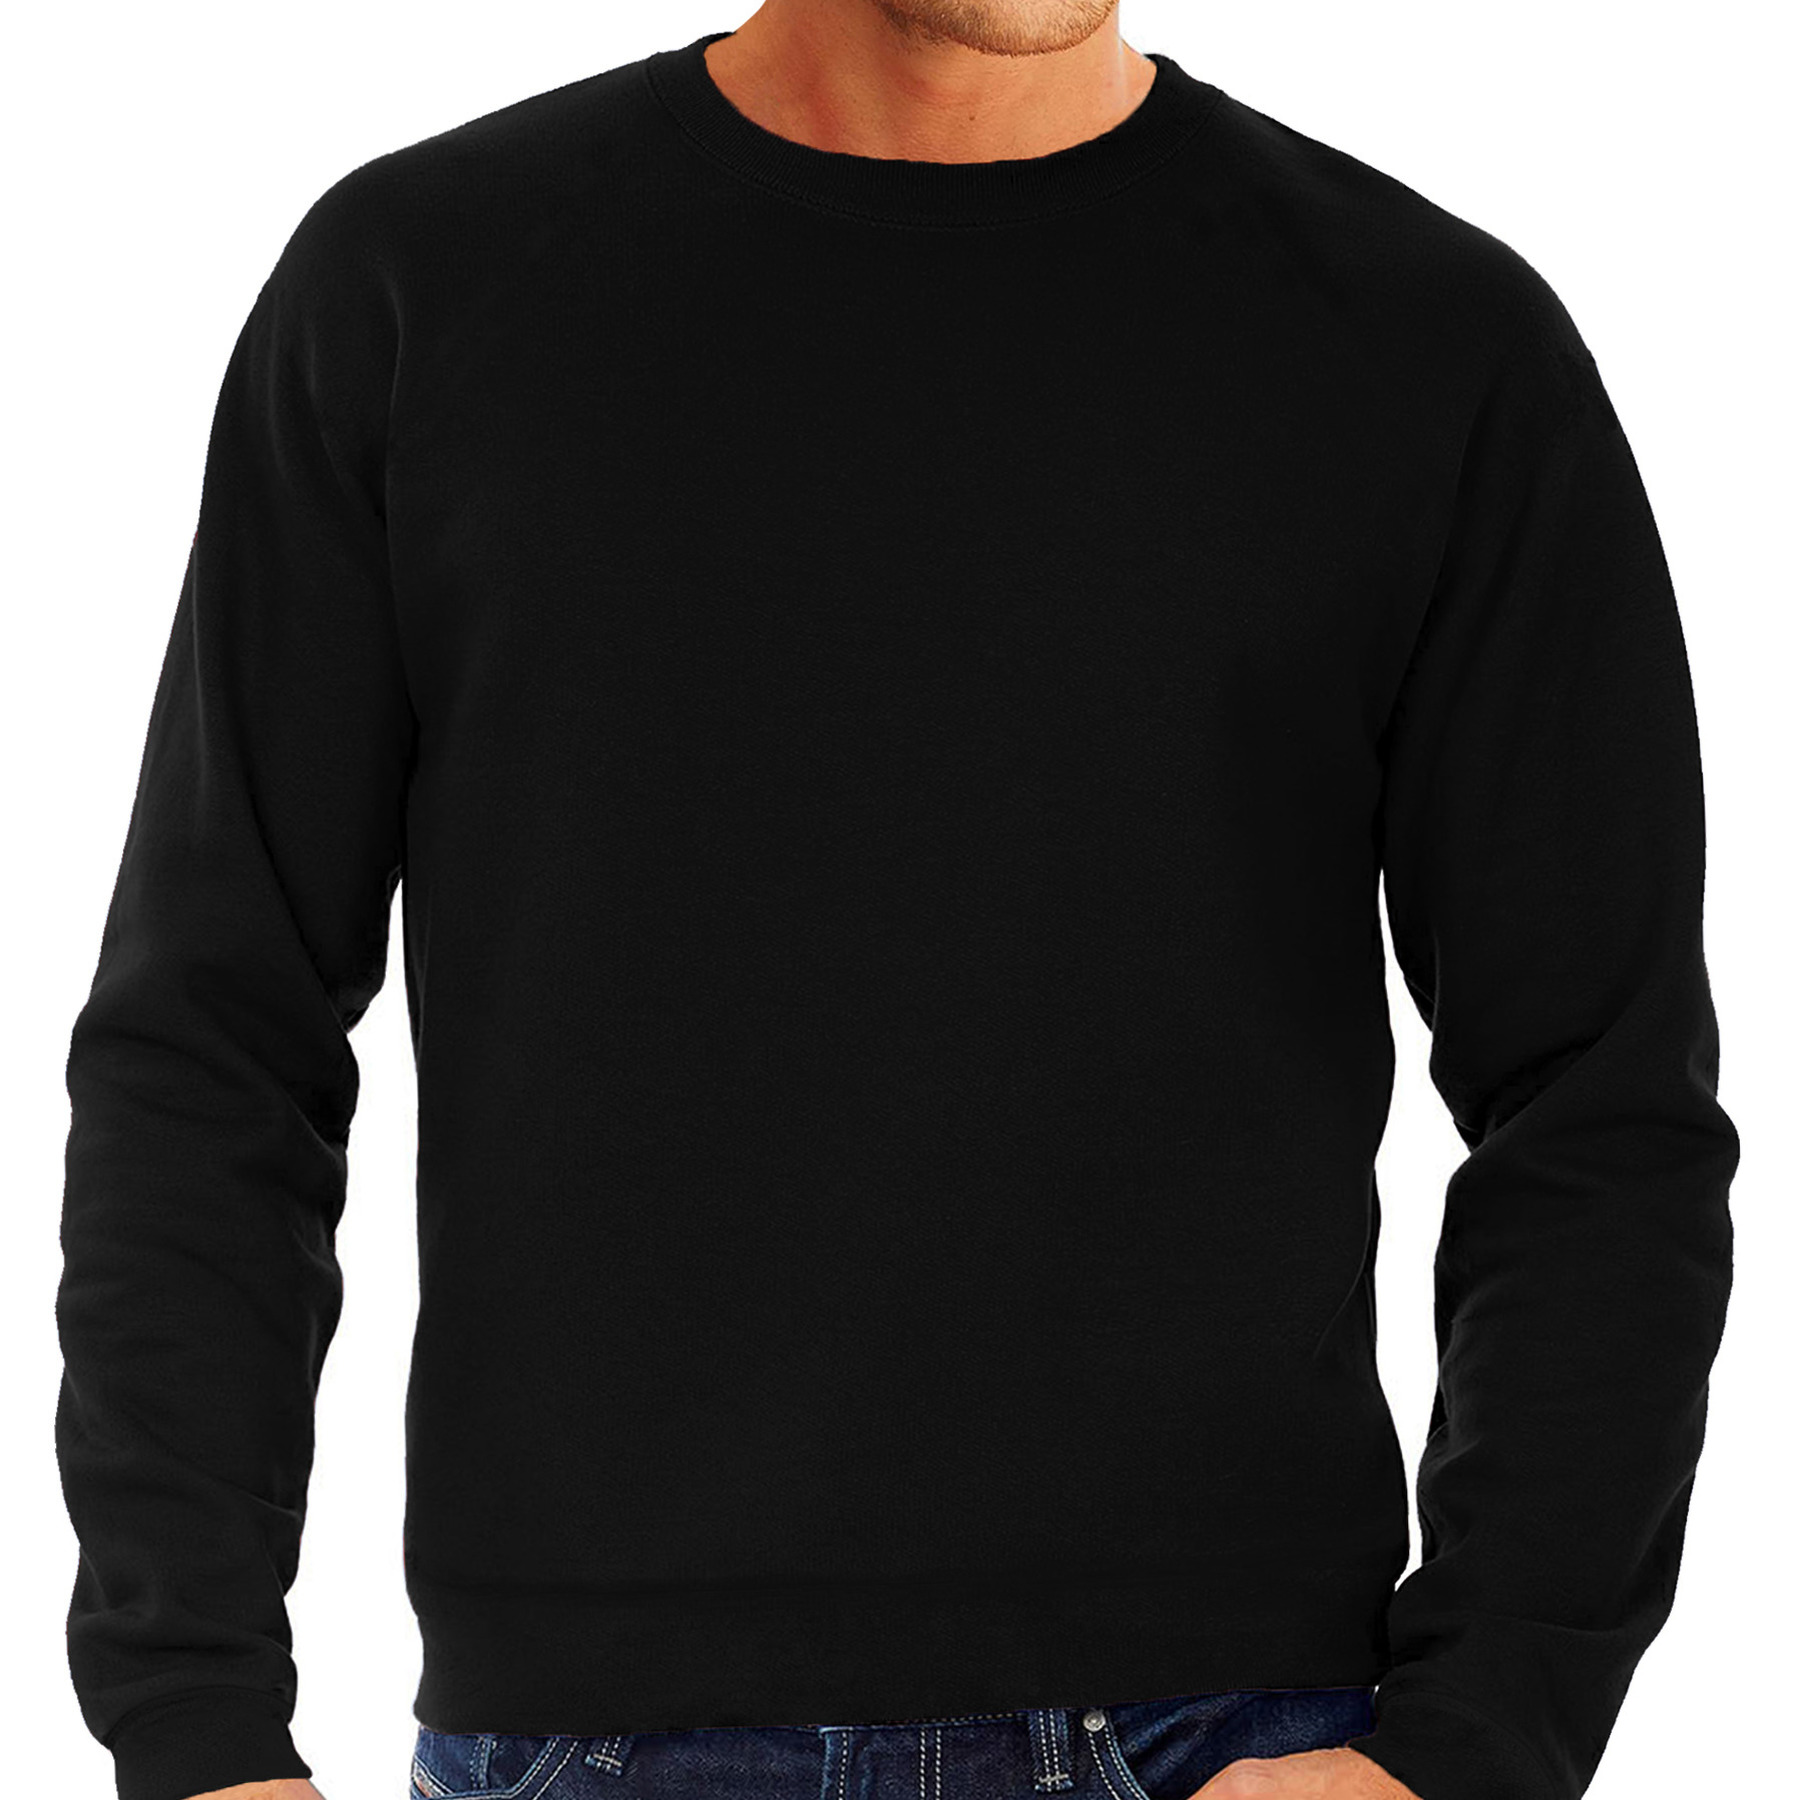 Zwarte sweater / sweatshirt trui grote maat met ronde hals voor heren 3XL (58) -